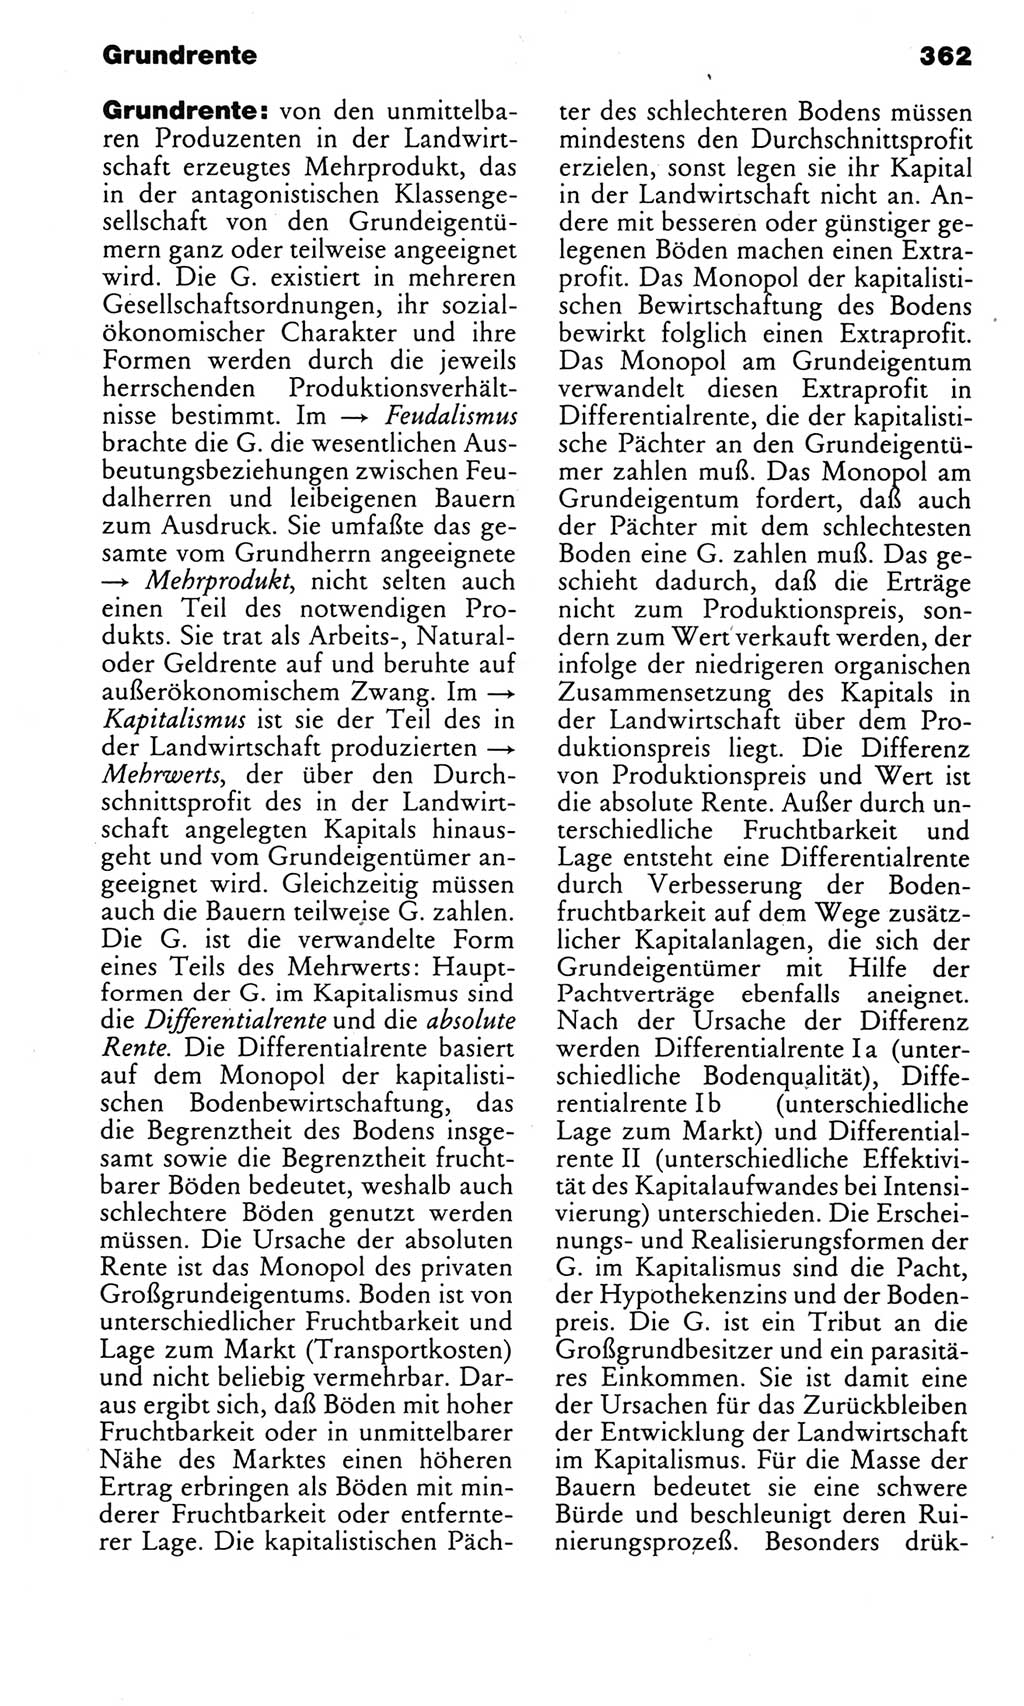 Kleines politisches Wörterbuch [Deutsche Demokratische Republik (DDR)] 1985, Seite 362 (Kl. pol. Wb. DDR 1985, S. 362)